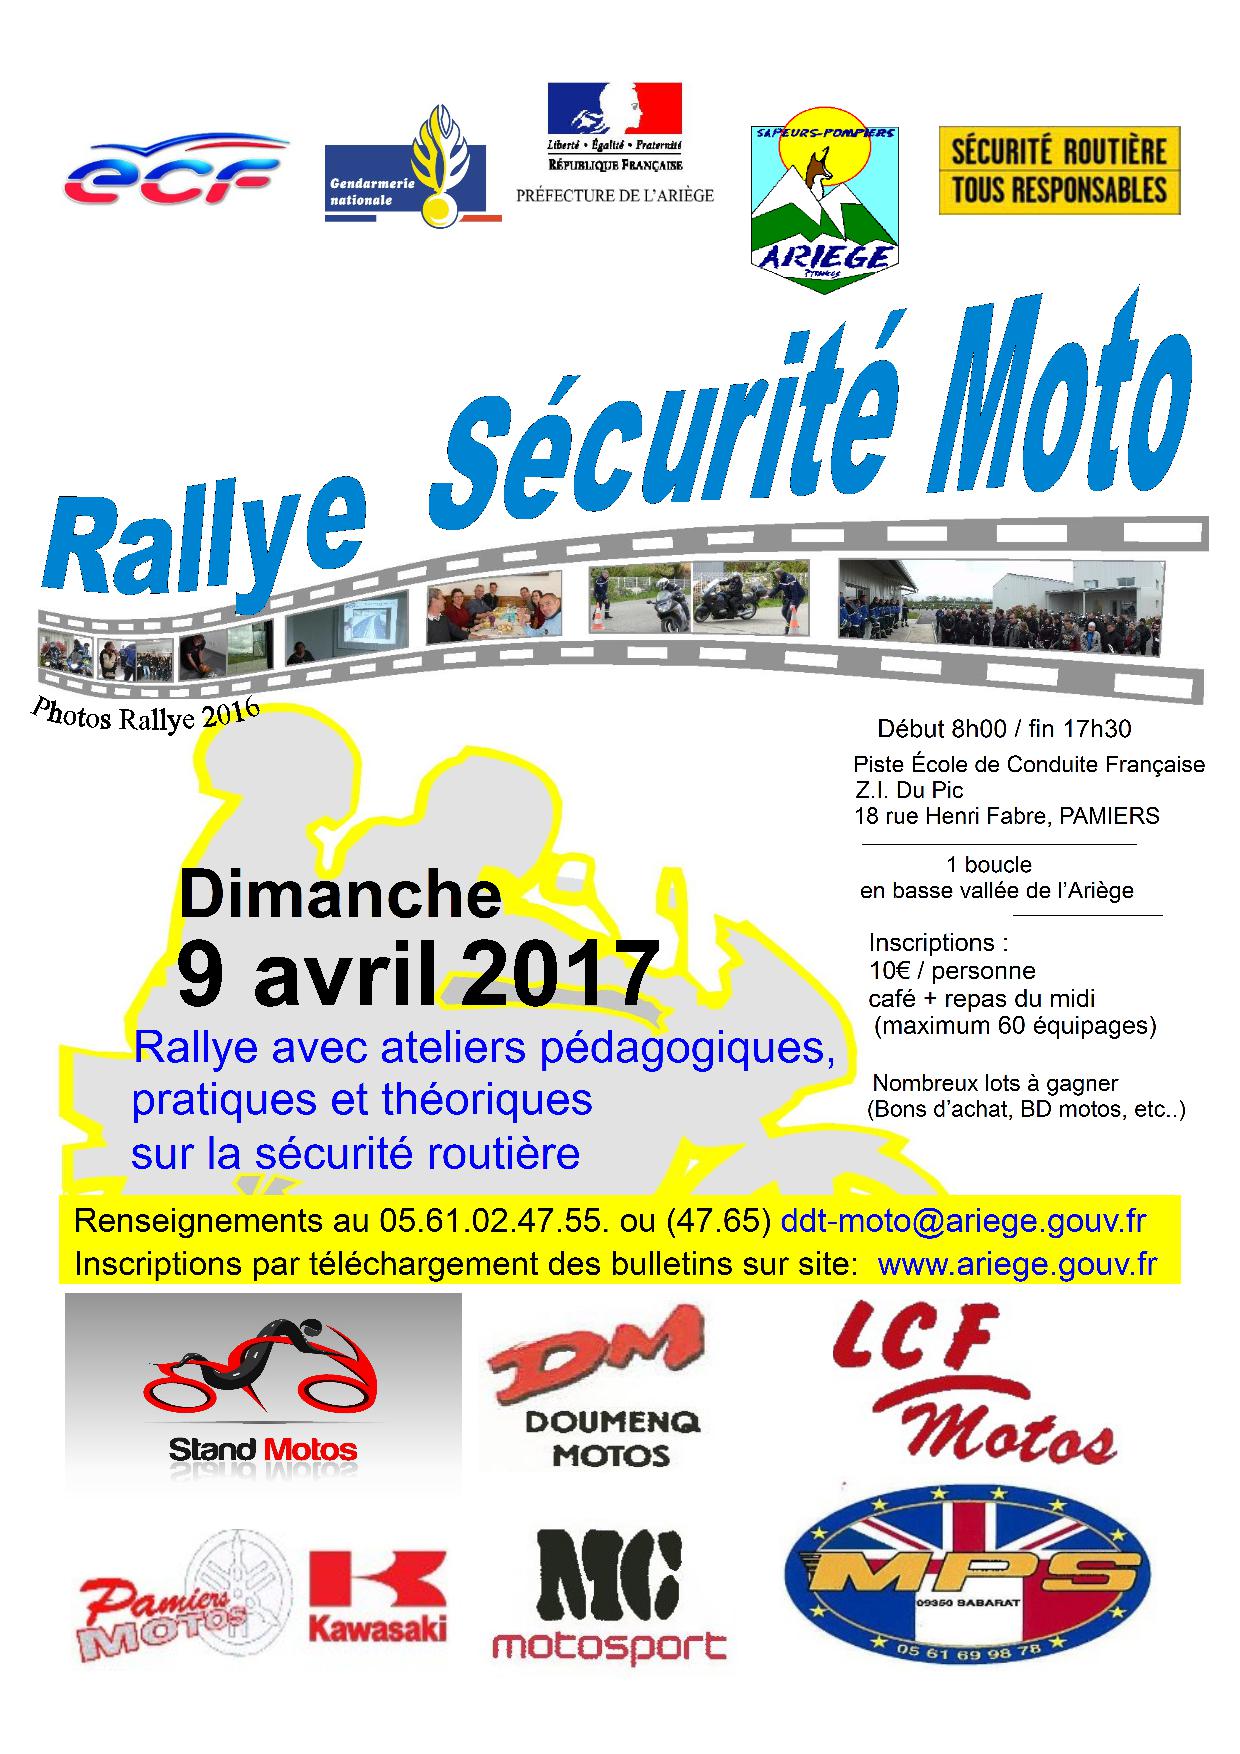 Rallye moto sécurité et ateliers pédagogiques à Pamiers (...)